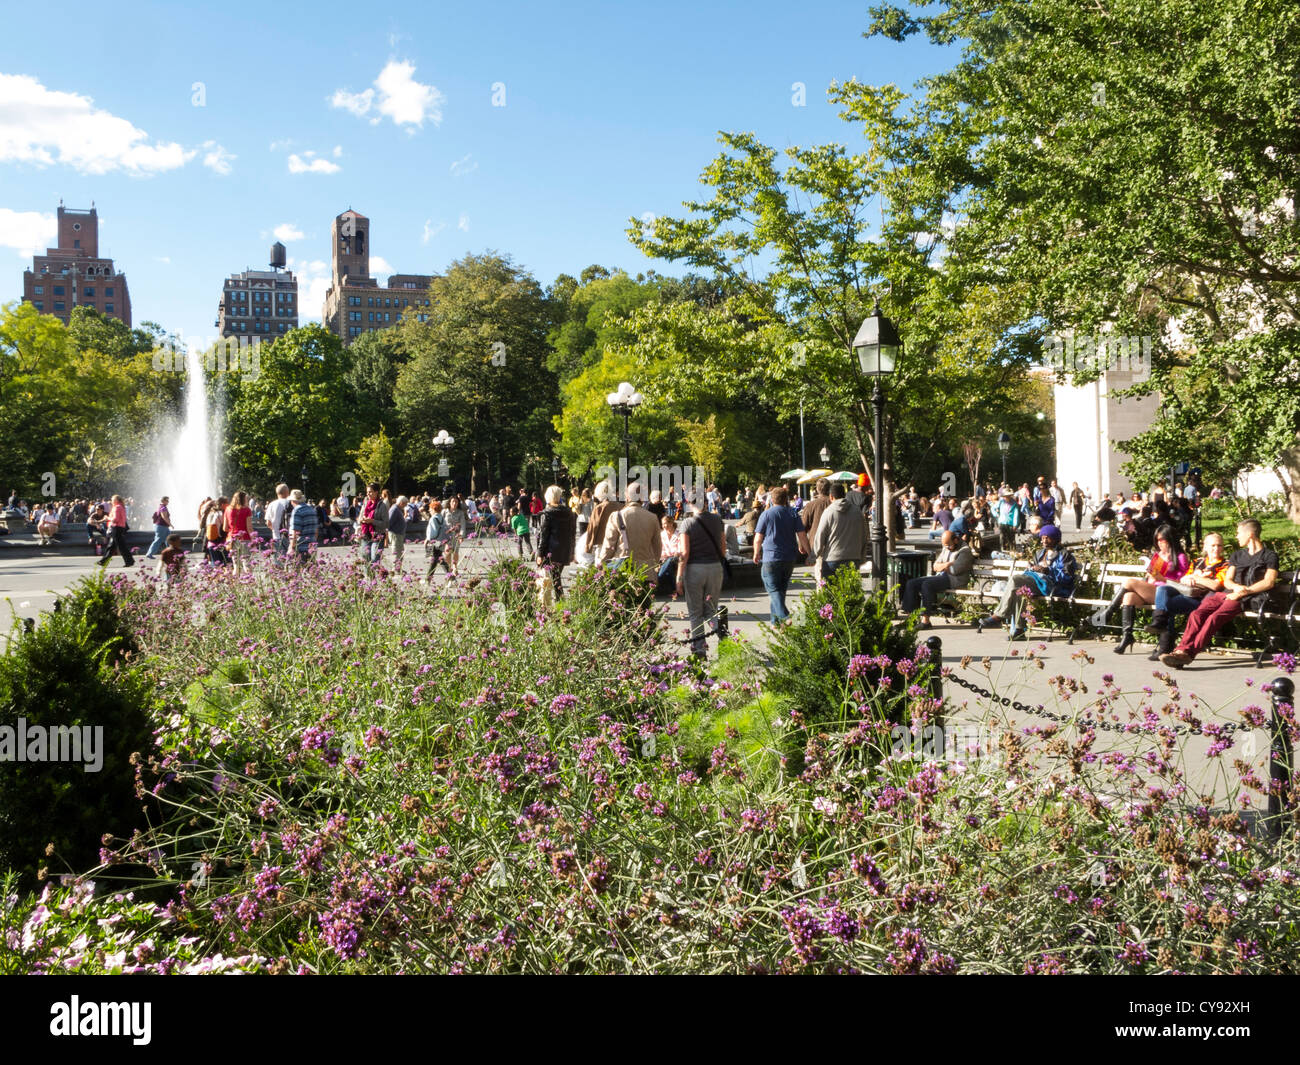 Fontaine, l'aménagement paysager et de la foule, Washington Square Park, Greenwich Village, NEW YORK Banque D'Images